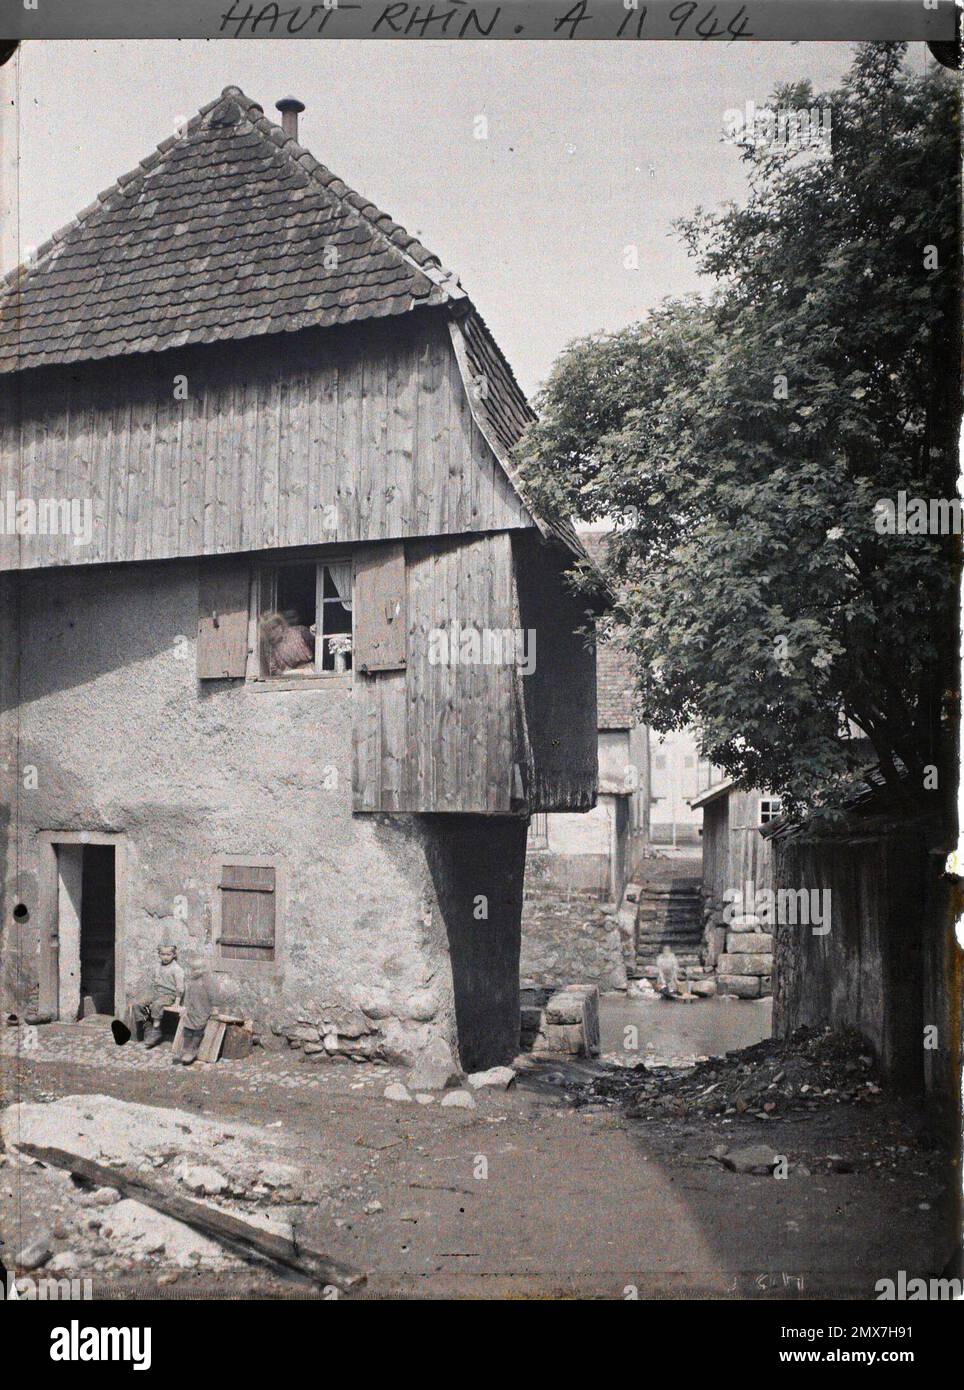 Masevaux, Haut-Rhin, Elsass, Frankreich Allele on Doller , 1917 - Elsass - Paul Castelnau (fotografischer Teil der Armeen) - (Juni) Stockfoto